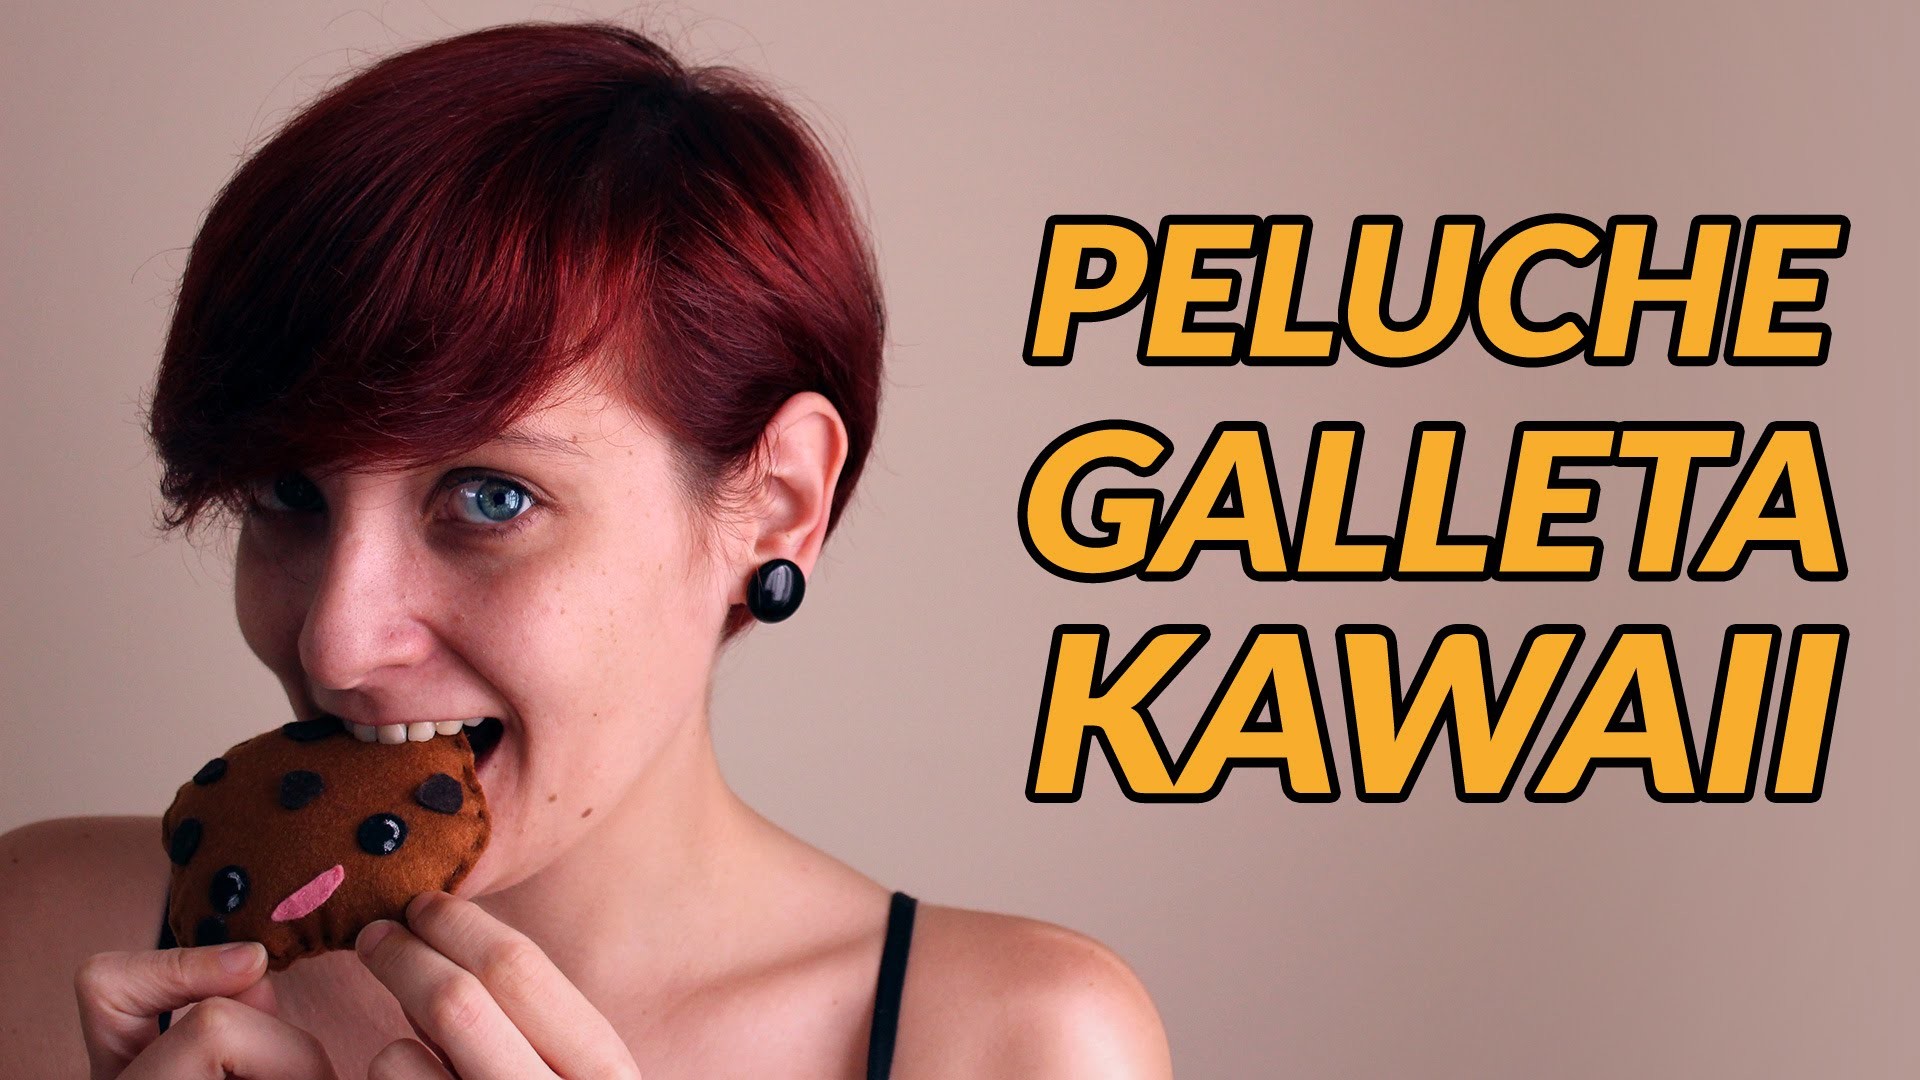 Cómo hacer un mini peluche galleta kawaii | Manualidades con fieltro